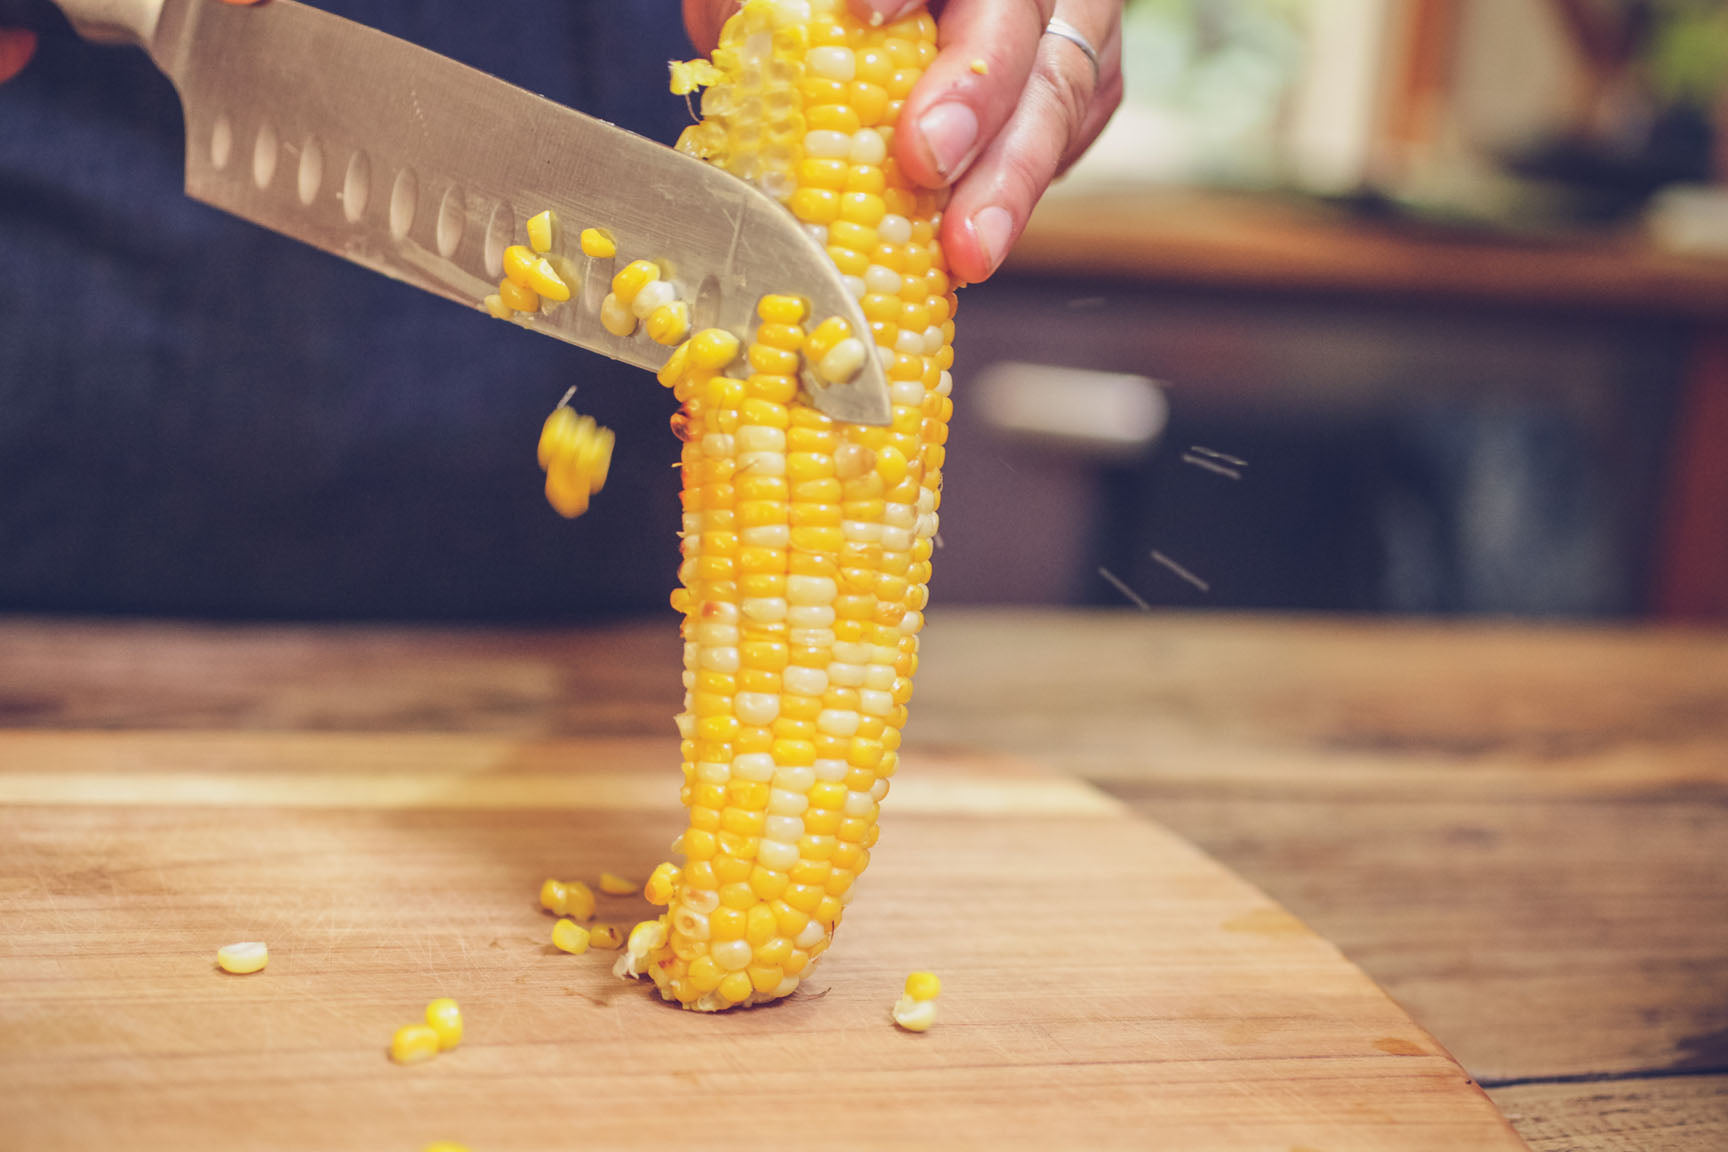 slice corn off the cob